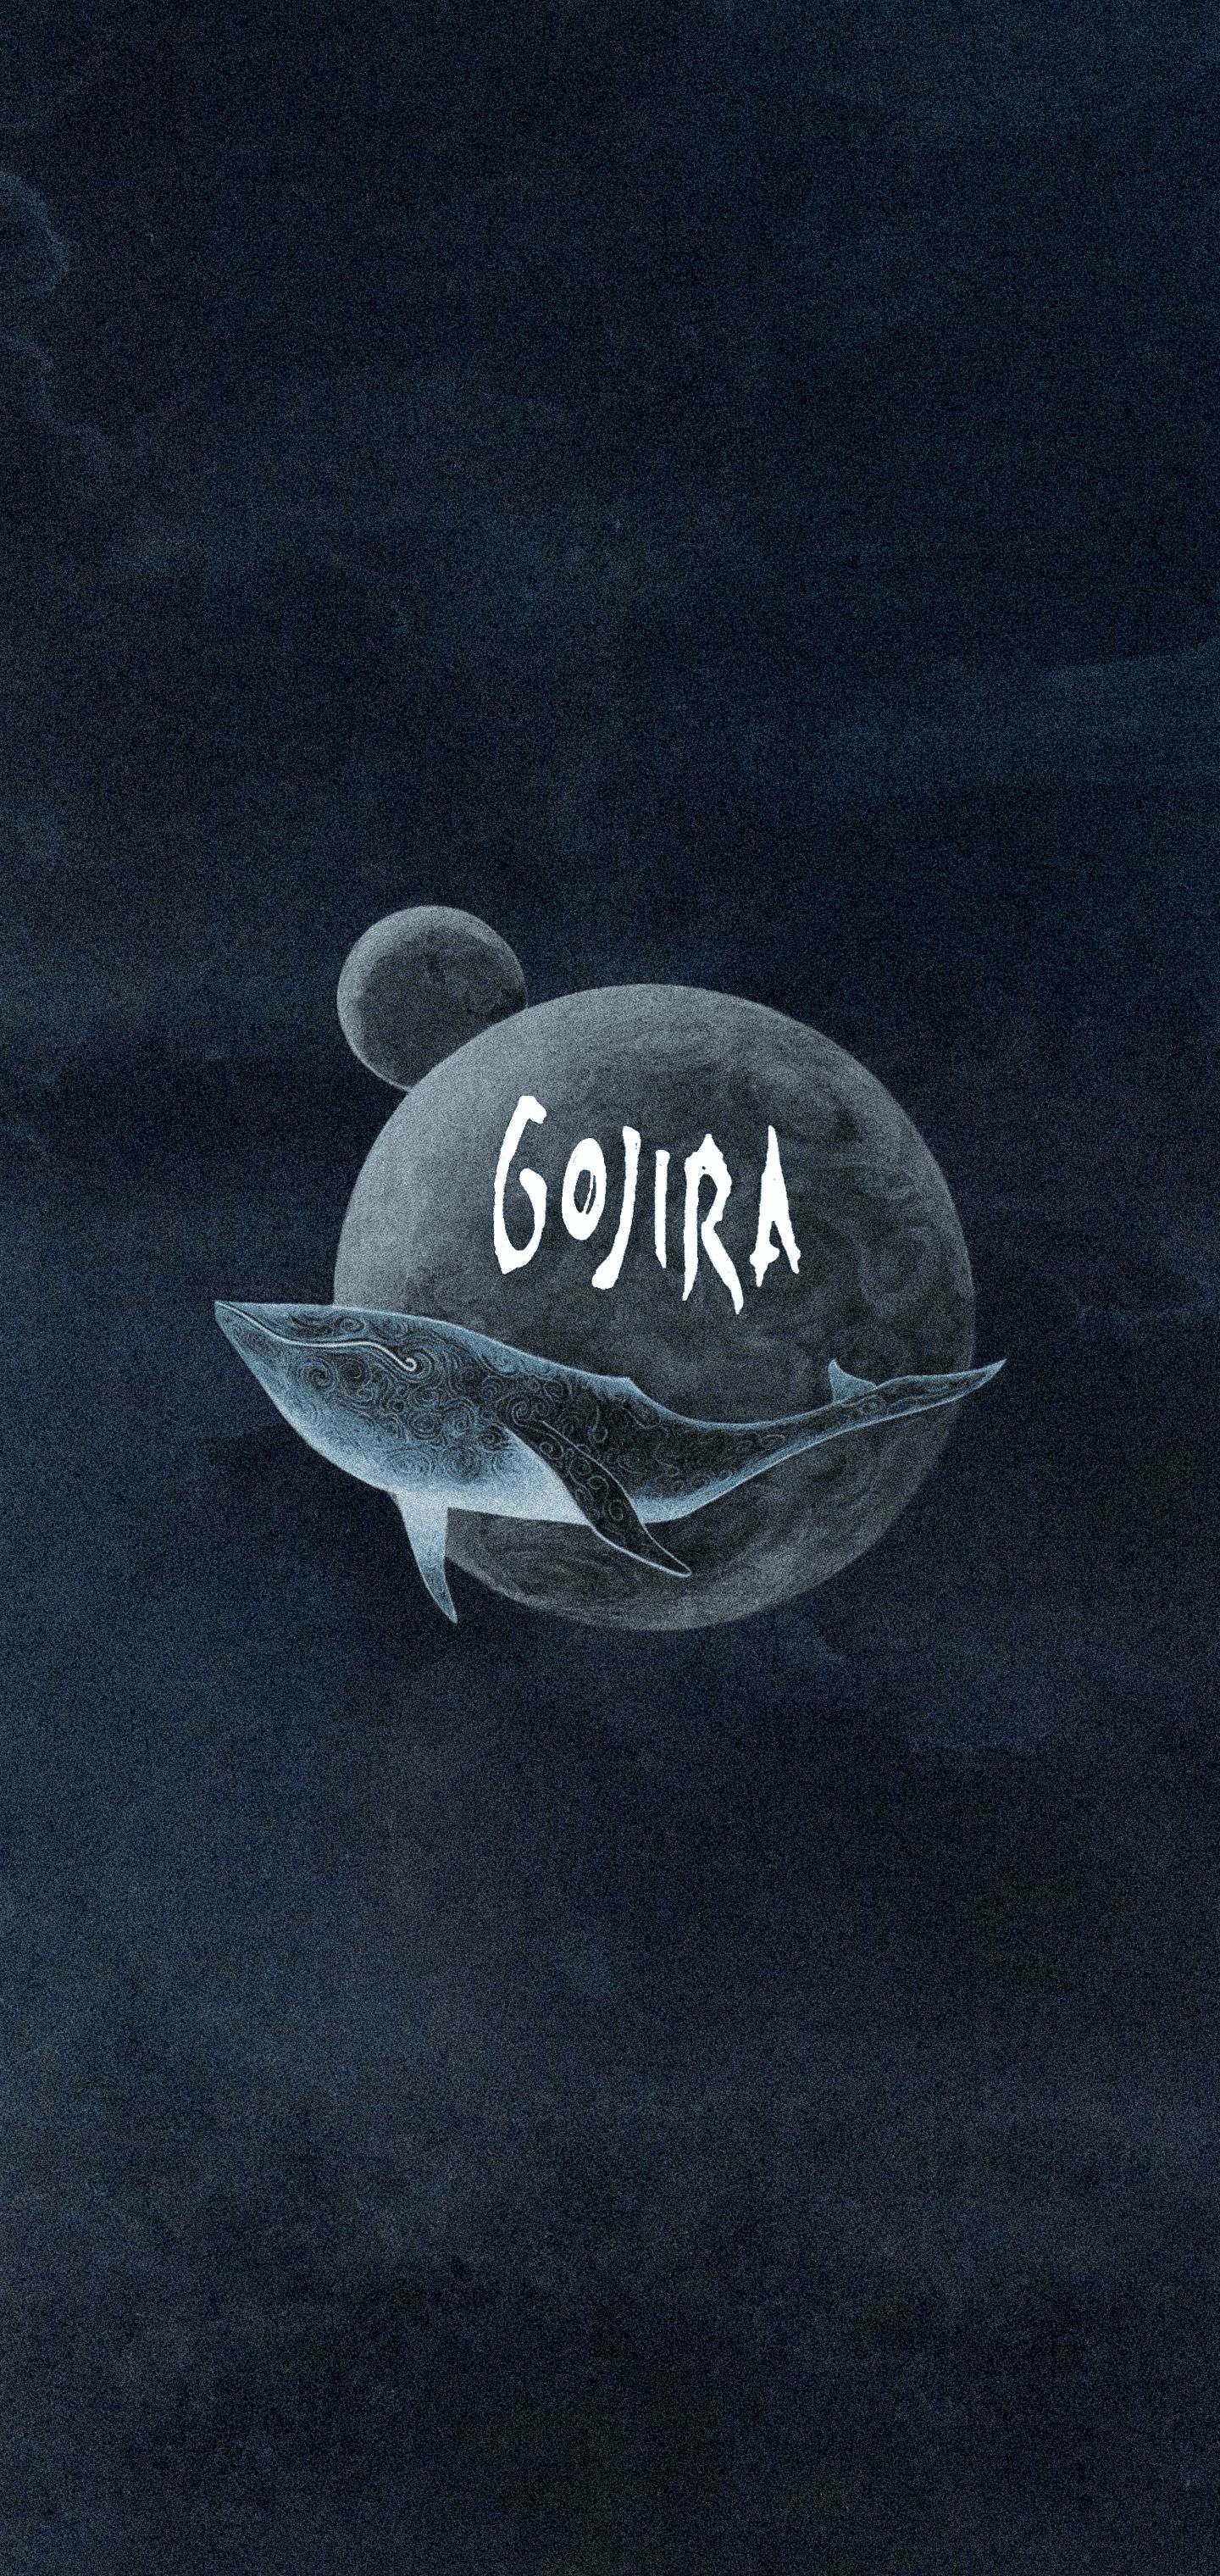 gojira (band), gojira, music